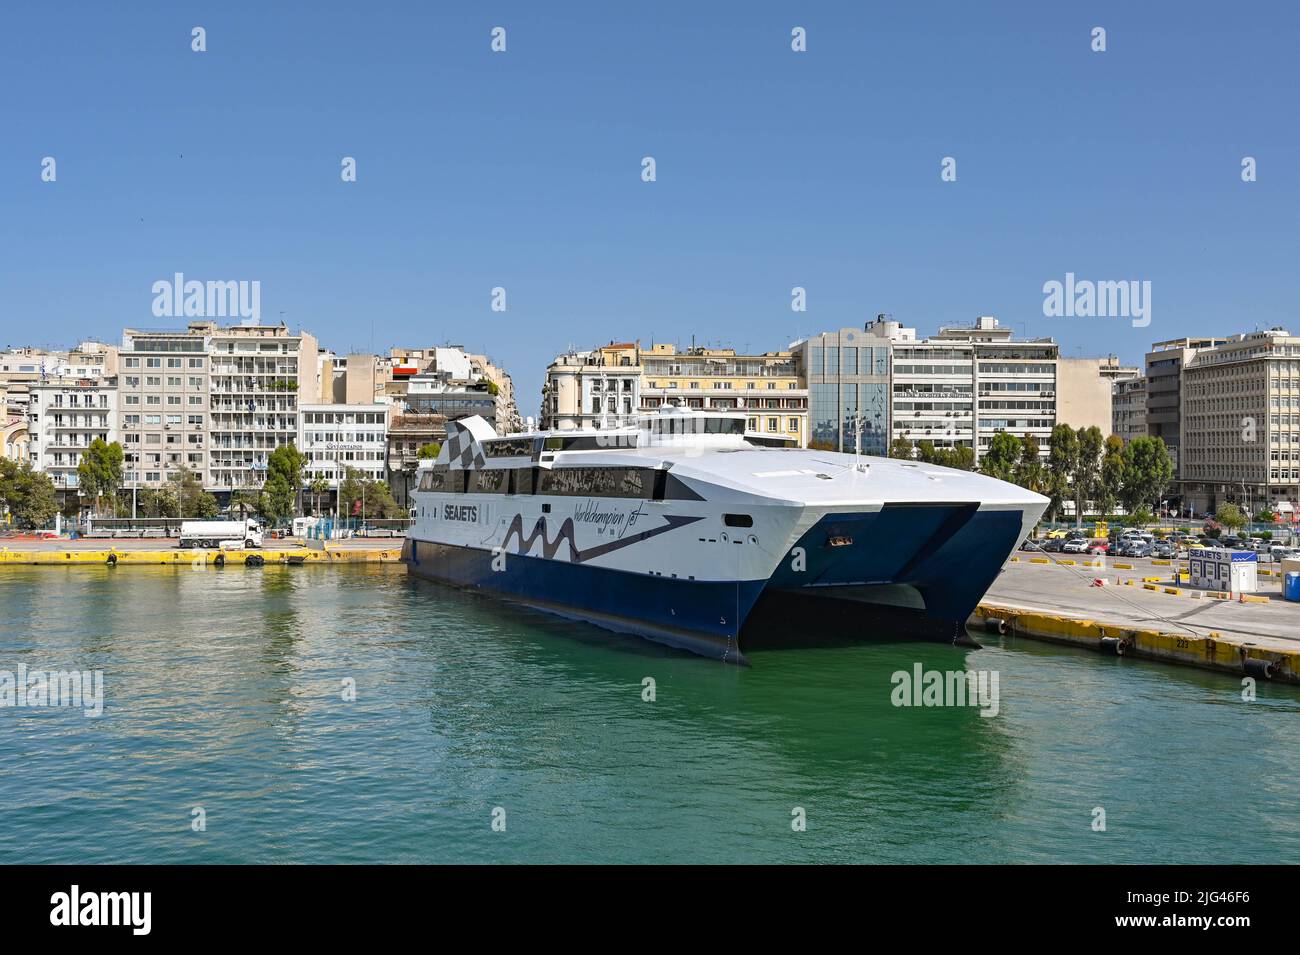 Athen, Griechenland - 2022. Mai: Doppelrumpf-Hochgeschwindigkeitsfähre Weltmeister Jet, der im Hafen von Piräus festgemacht wurde, nachdem er von einer der griechischen Inseln aus angekommen war. Stockfoto